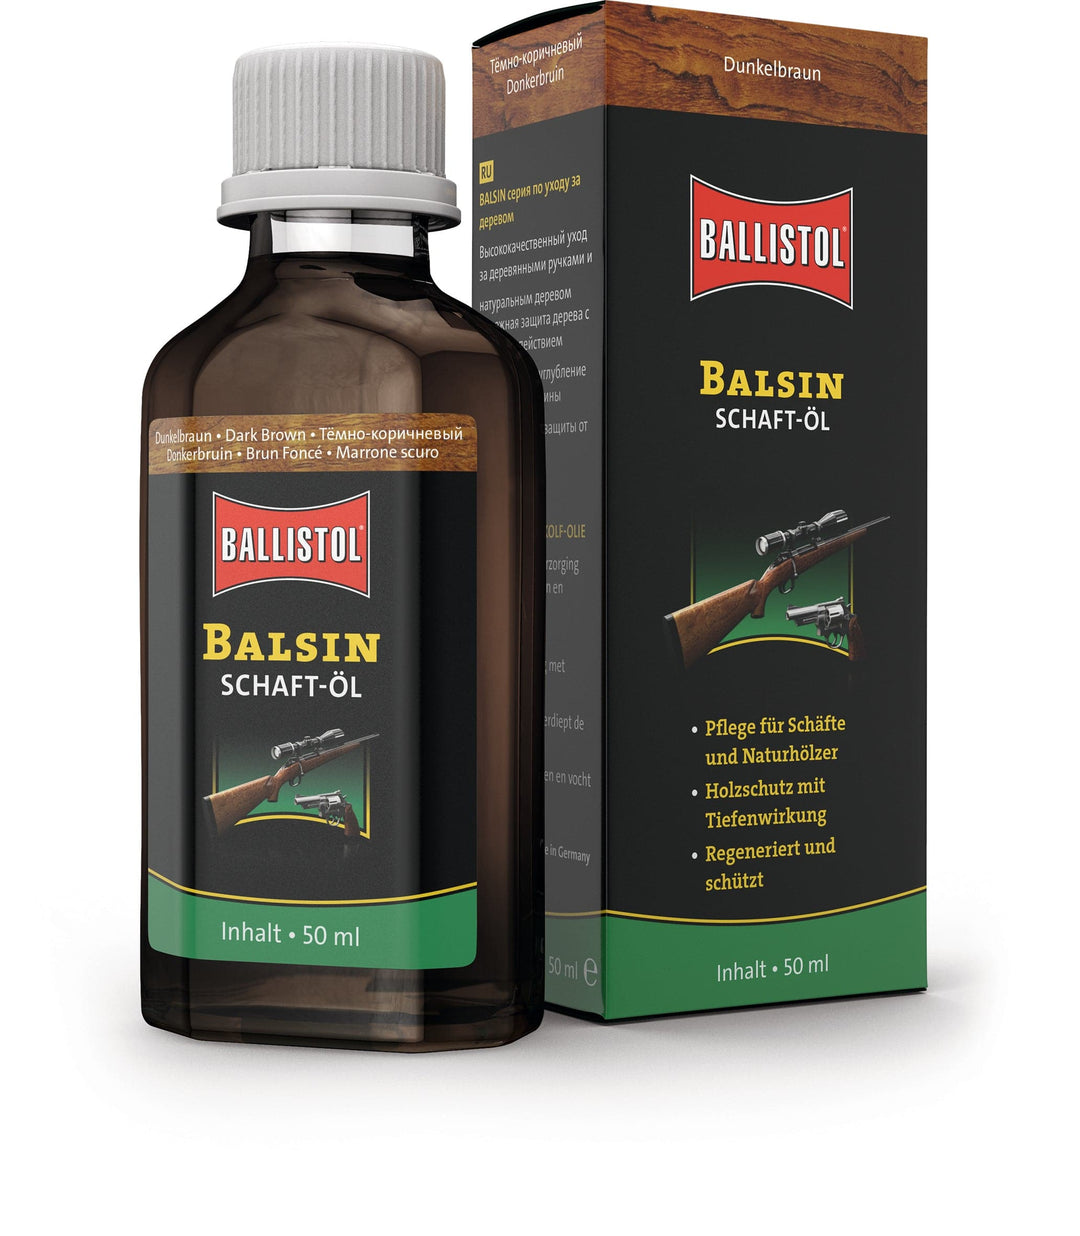 Ballistol Balsin Schaft-Öl – Heidejagd